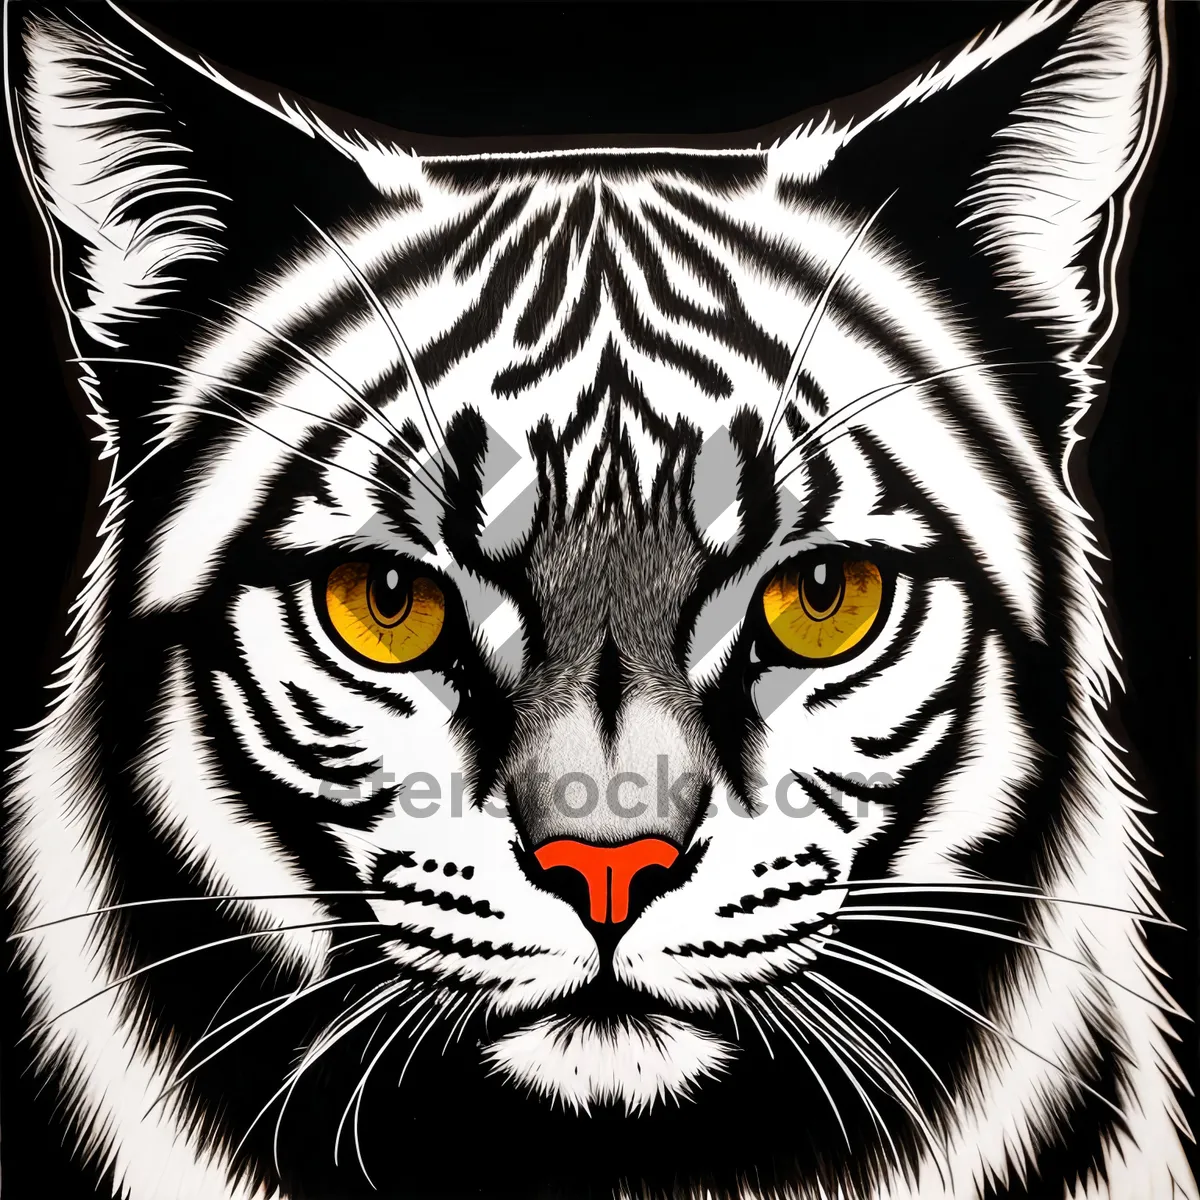 Picture of Fierce Striped Stare: Majestic Tiger Cat in Closeup